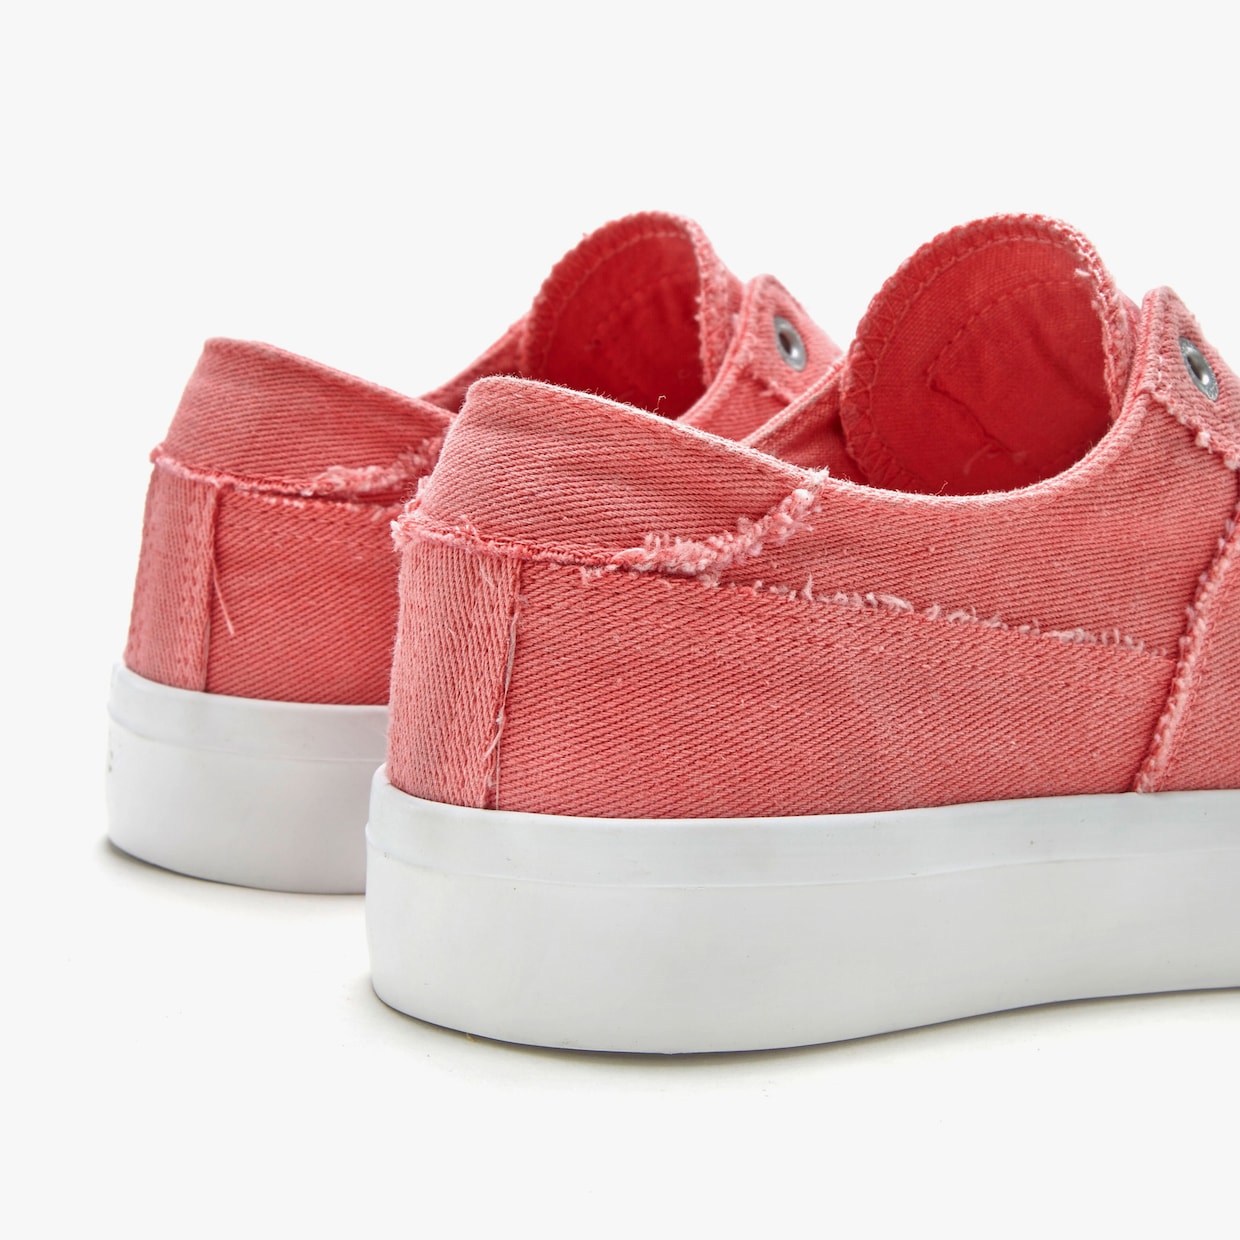 Elbsand Slip-On Sneaker - pink